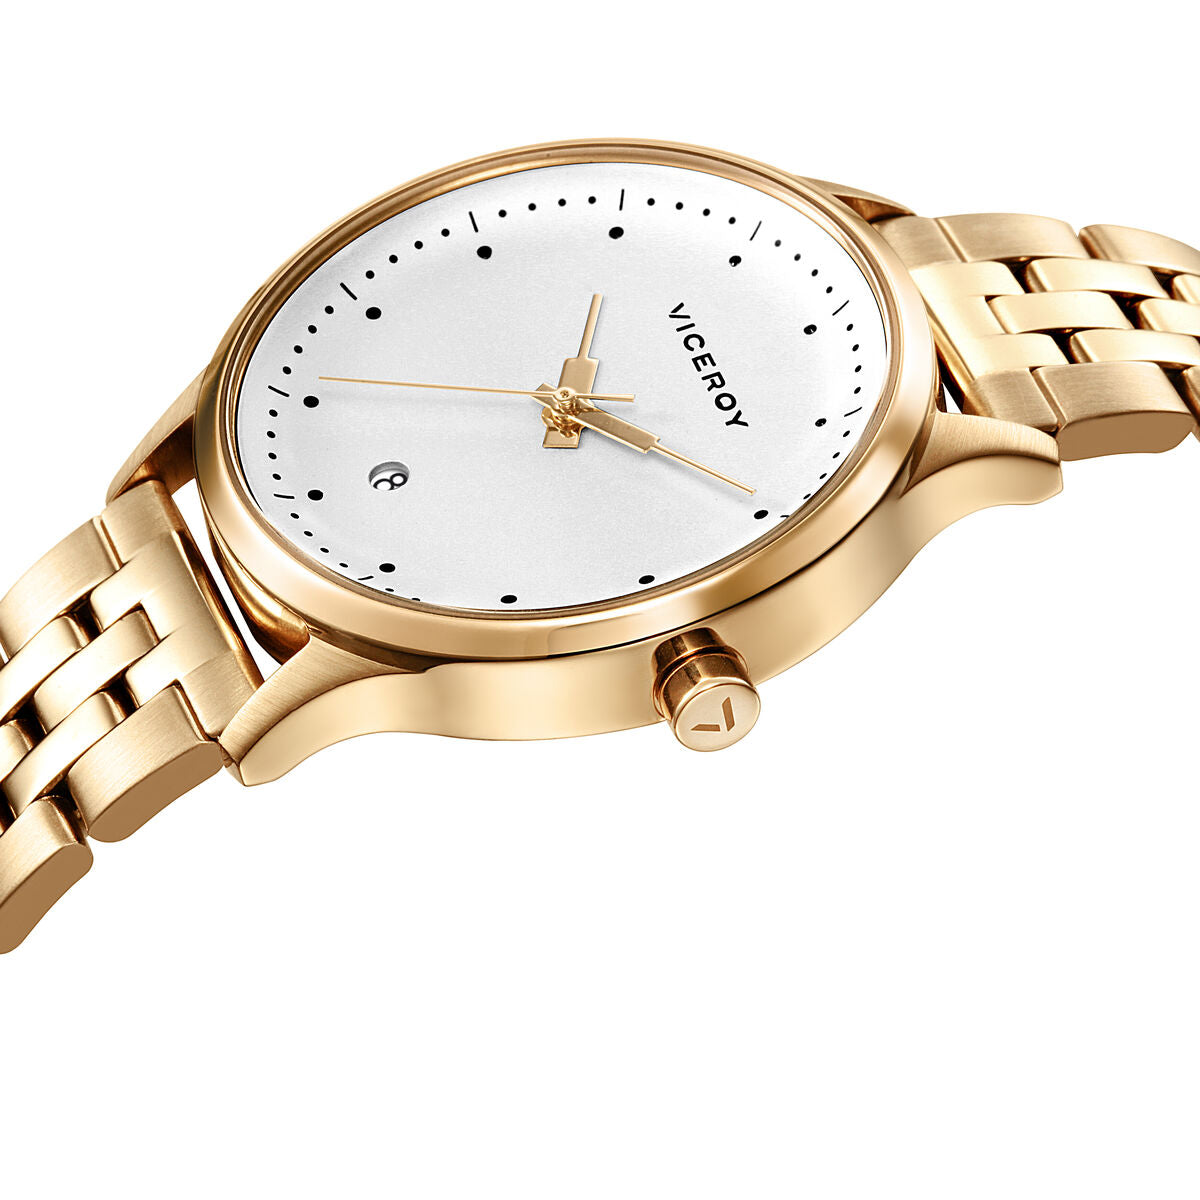 Horloge Dames Viceroy 461124-06 (Ø 37 mm)